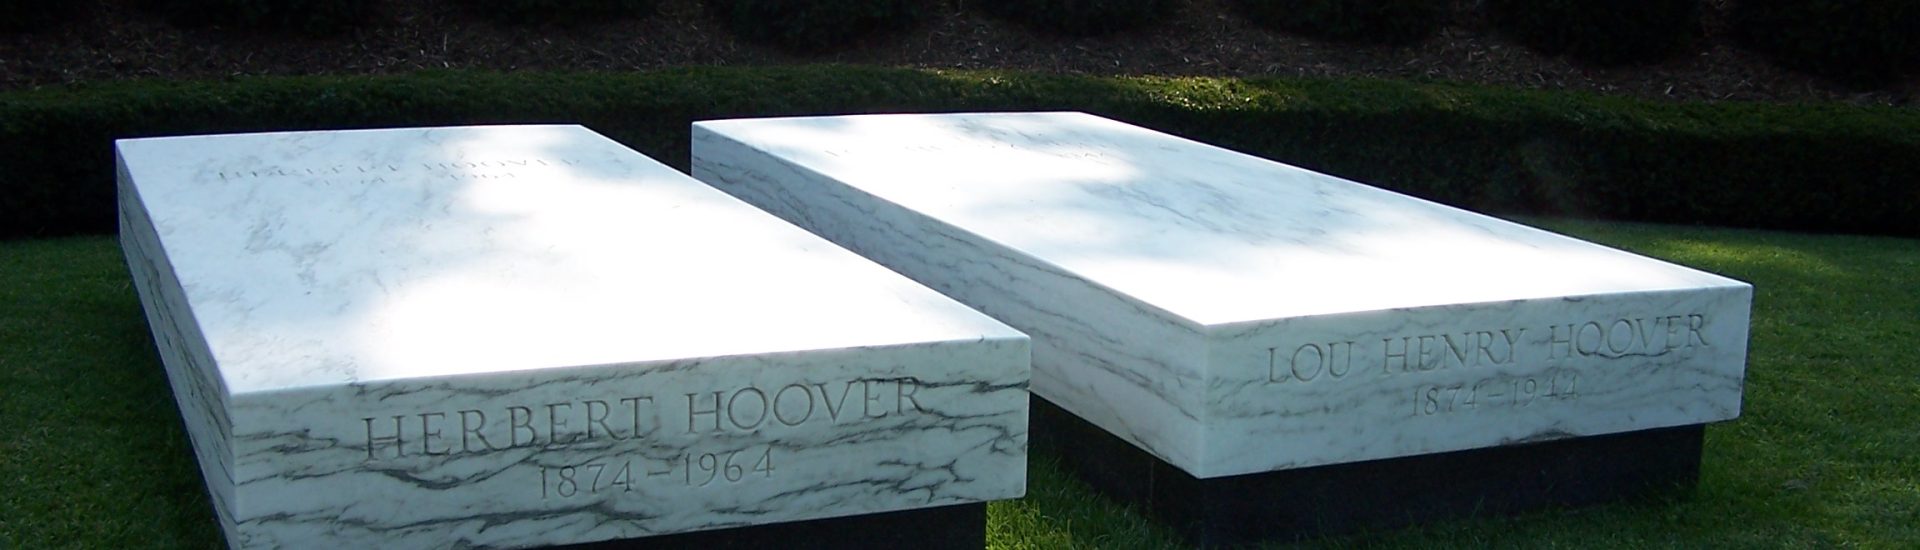 Herbert Hoover's Grave